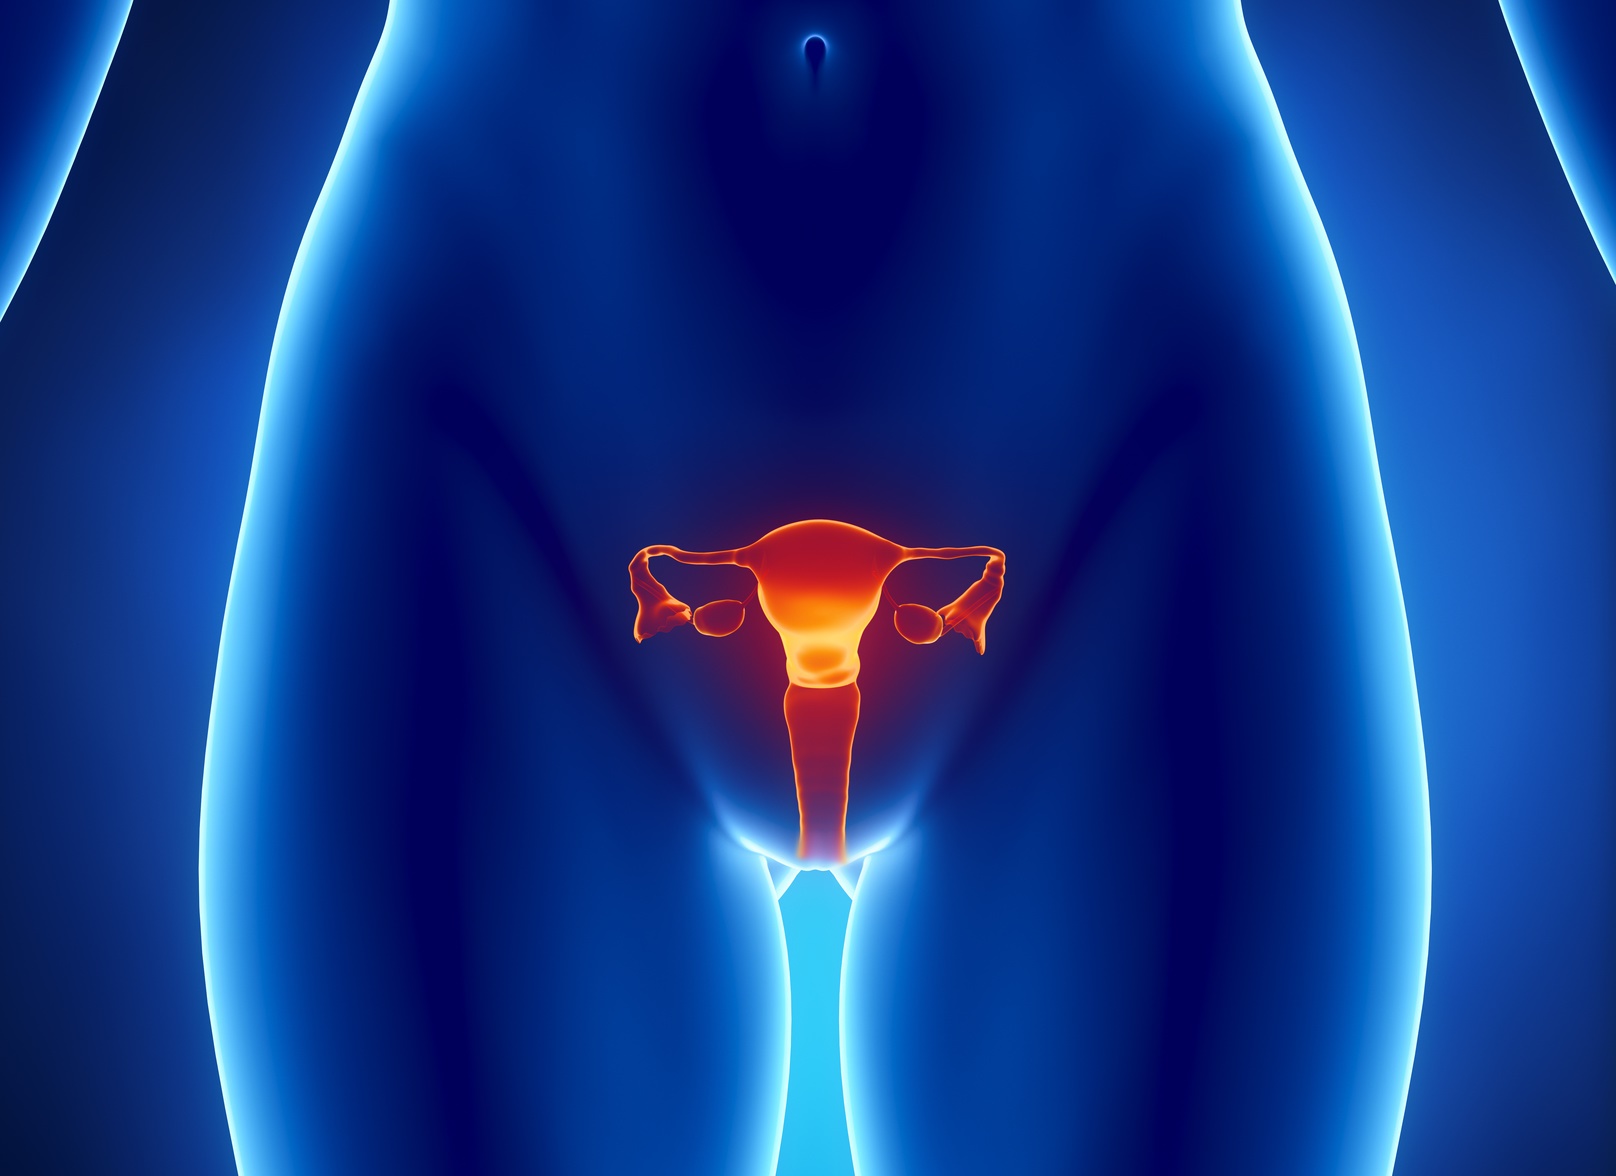 Le cancer de l’endomètre, ou cancer du corps de l’utérus, touche plutôt des femmes ménopausées. © CLIPAREA.com, Fotolia